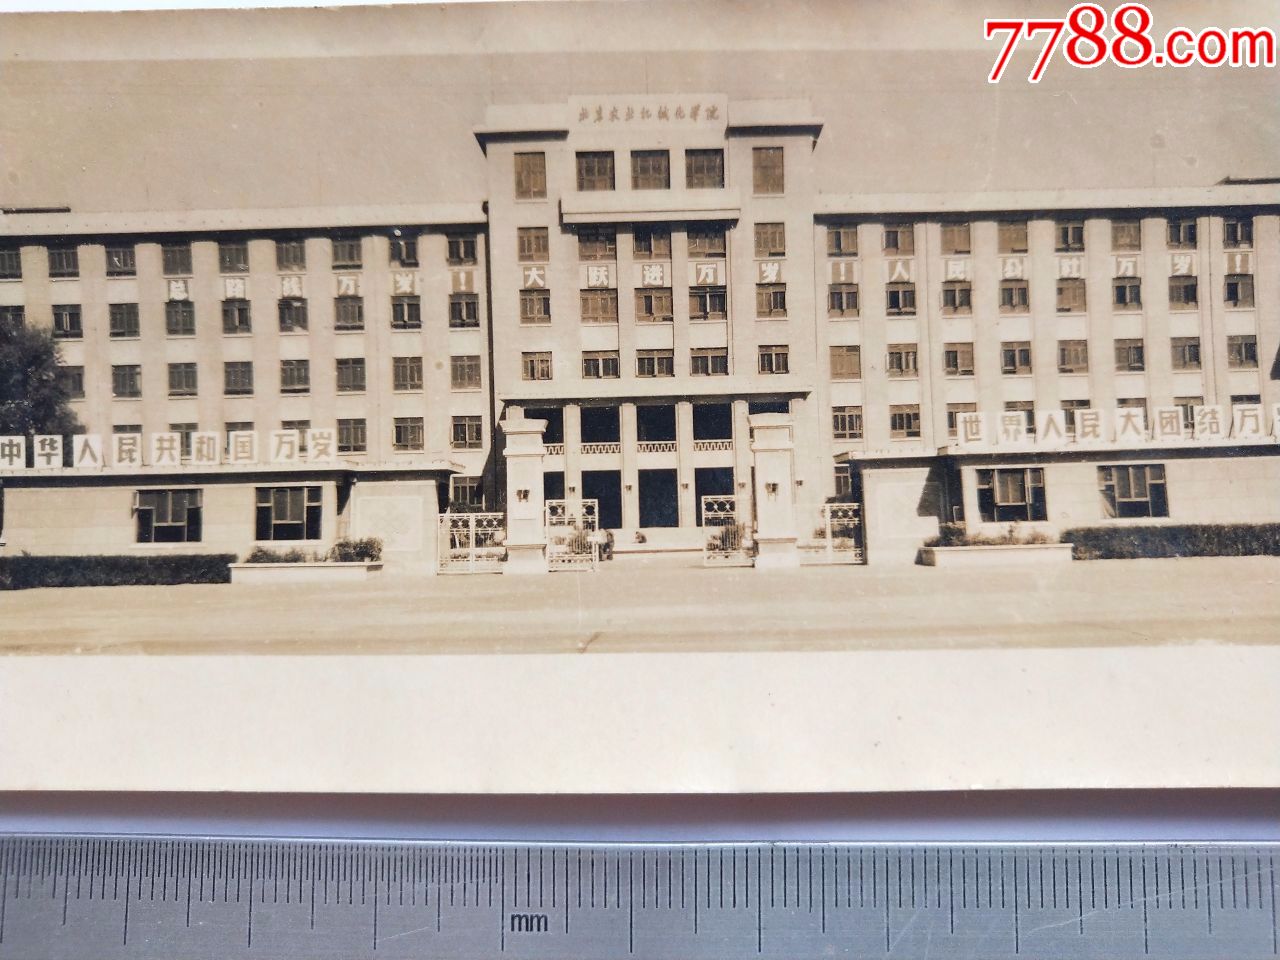 北京机械学院历史图片